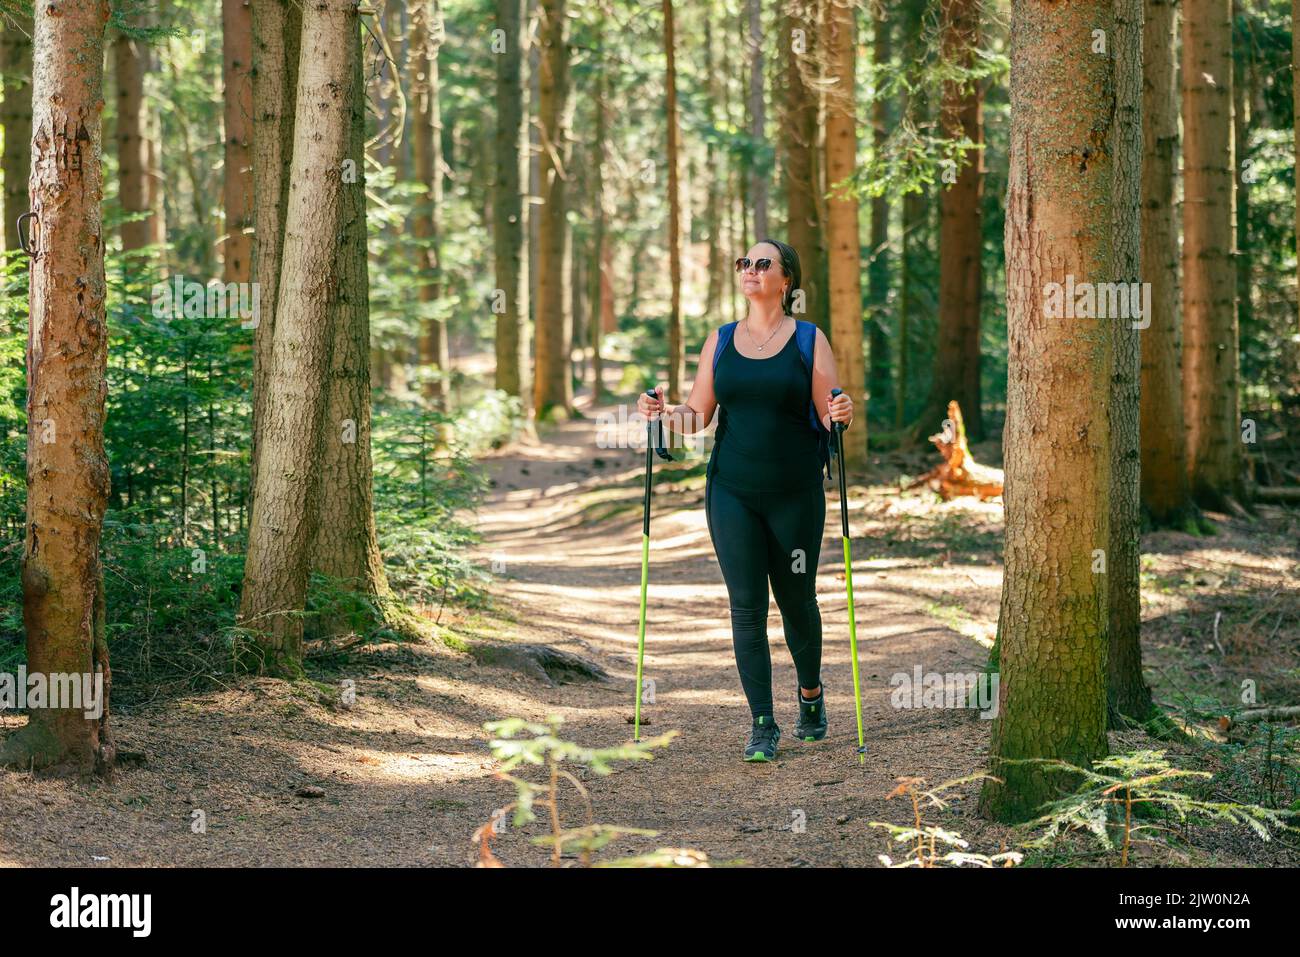 La mujer camina por el bosque en un sendero bien trodado. El concepto de una vida sana, disfrutando y practicando deportes en la naturaleza Foto de stock